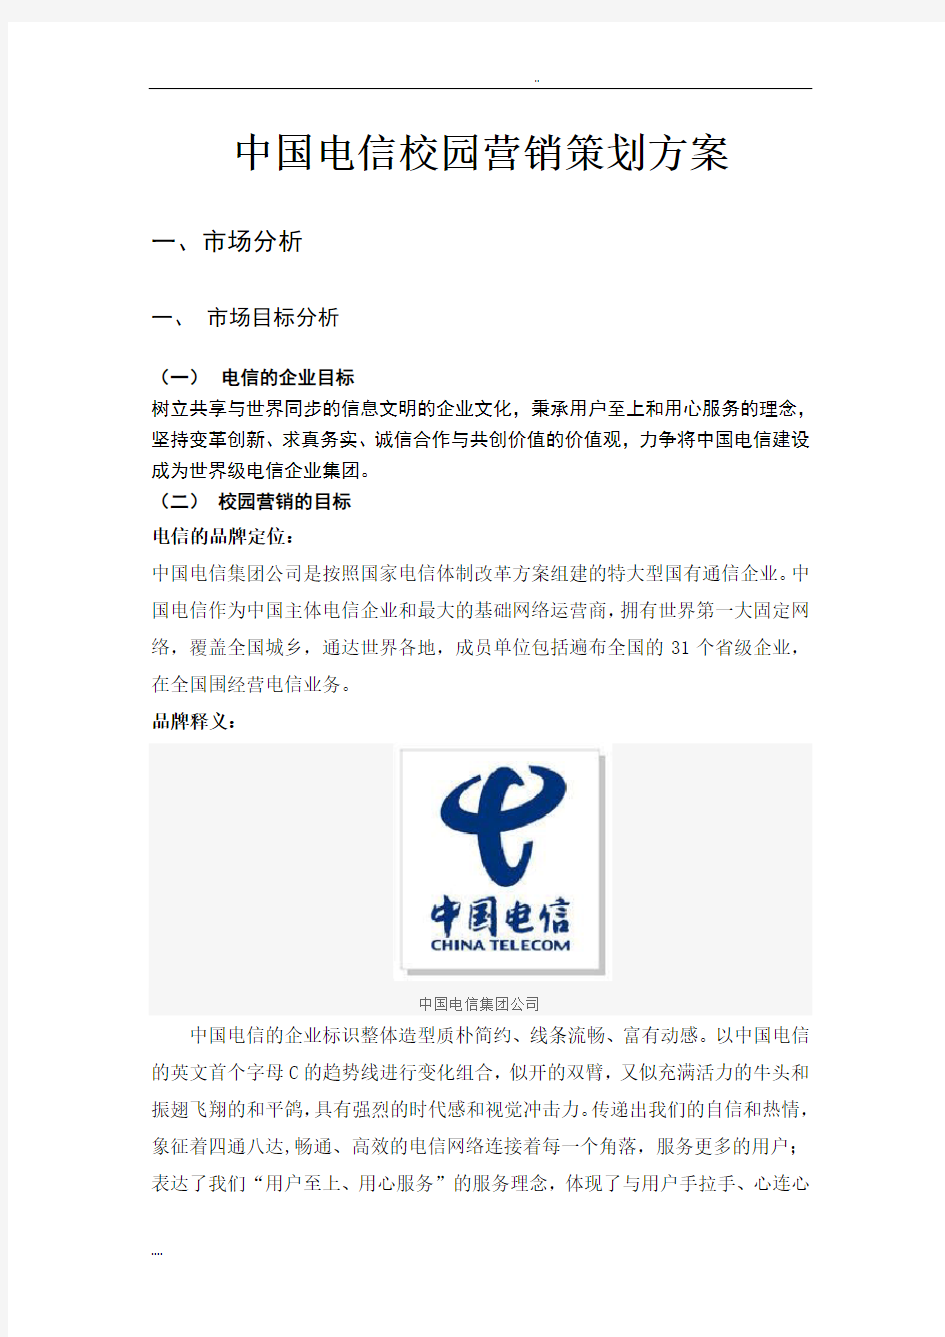 中国电信校园营销项目策划方案 